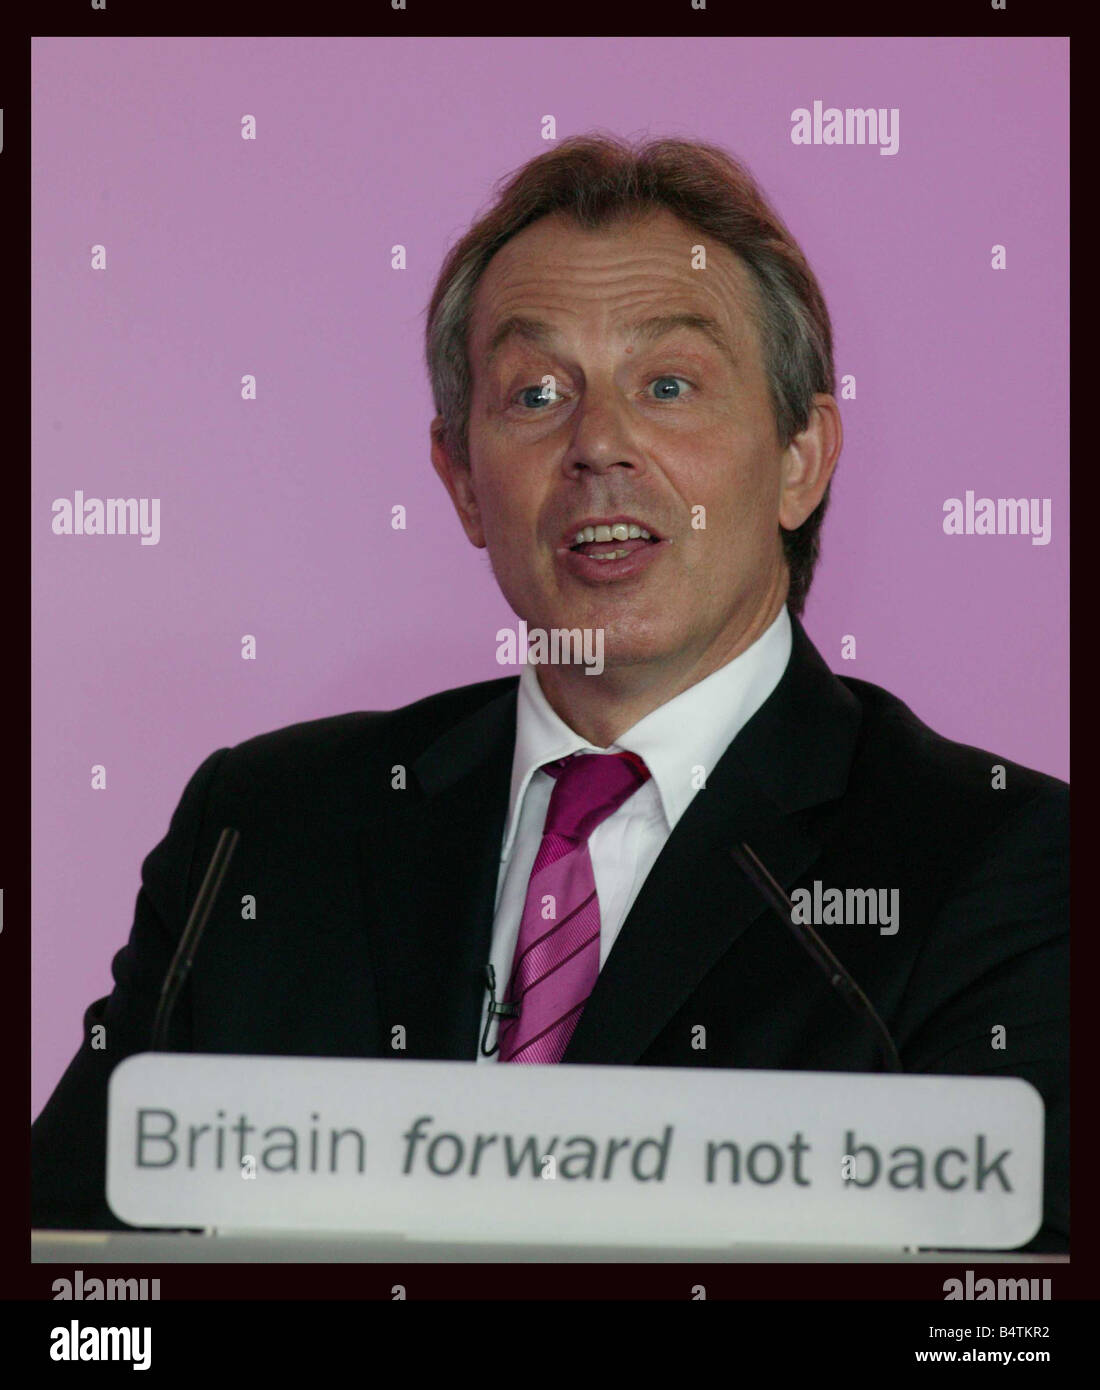 April 6 London U K Premierminister Tony Blair startete Kampagnen für eine dritte Amtszeit heute Fokussierung auf seinen Rekord von acht Jahre im Amt während der oppositionellen Konservativen Partei Wähler Fähigkeit, Vertrauen in Regierung in Frage gestellt Rede im Parlament zum letzten Mal vor Wähler zu den Urnen gehen auf 5. Blair sagte die Labour-Regierung hat gedrückt, Zinssätze und Arbeitslosigkeit konservative Führer Michael Howard sagte Blair brach sein Versprechen, einen Deckel auf die Frage, warum Steuern zu halten Menschen sollten sie jemals glauben wieder besuchte Blair und Brown anschließend eine Pressekonferenz in London Stockfoto